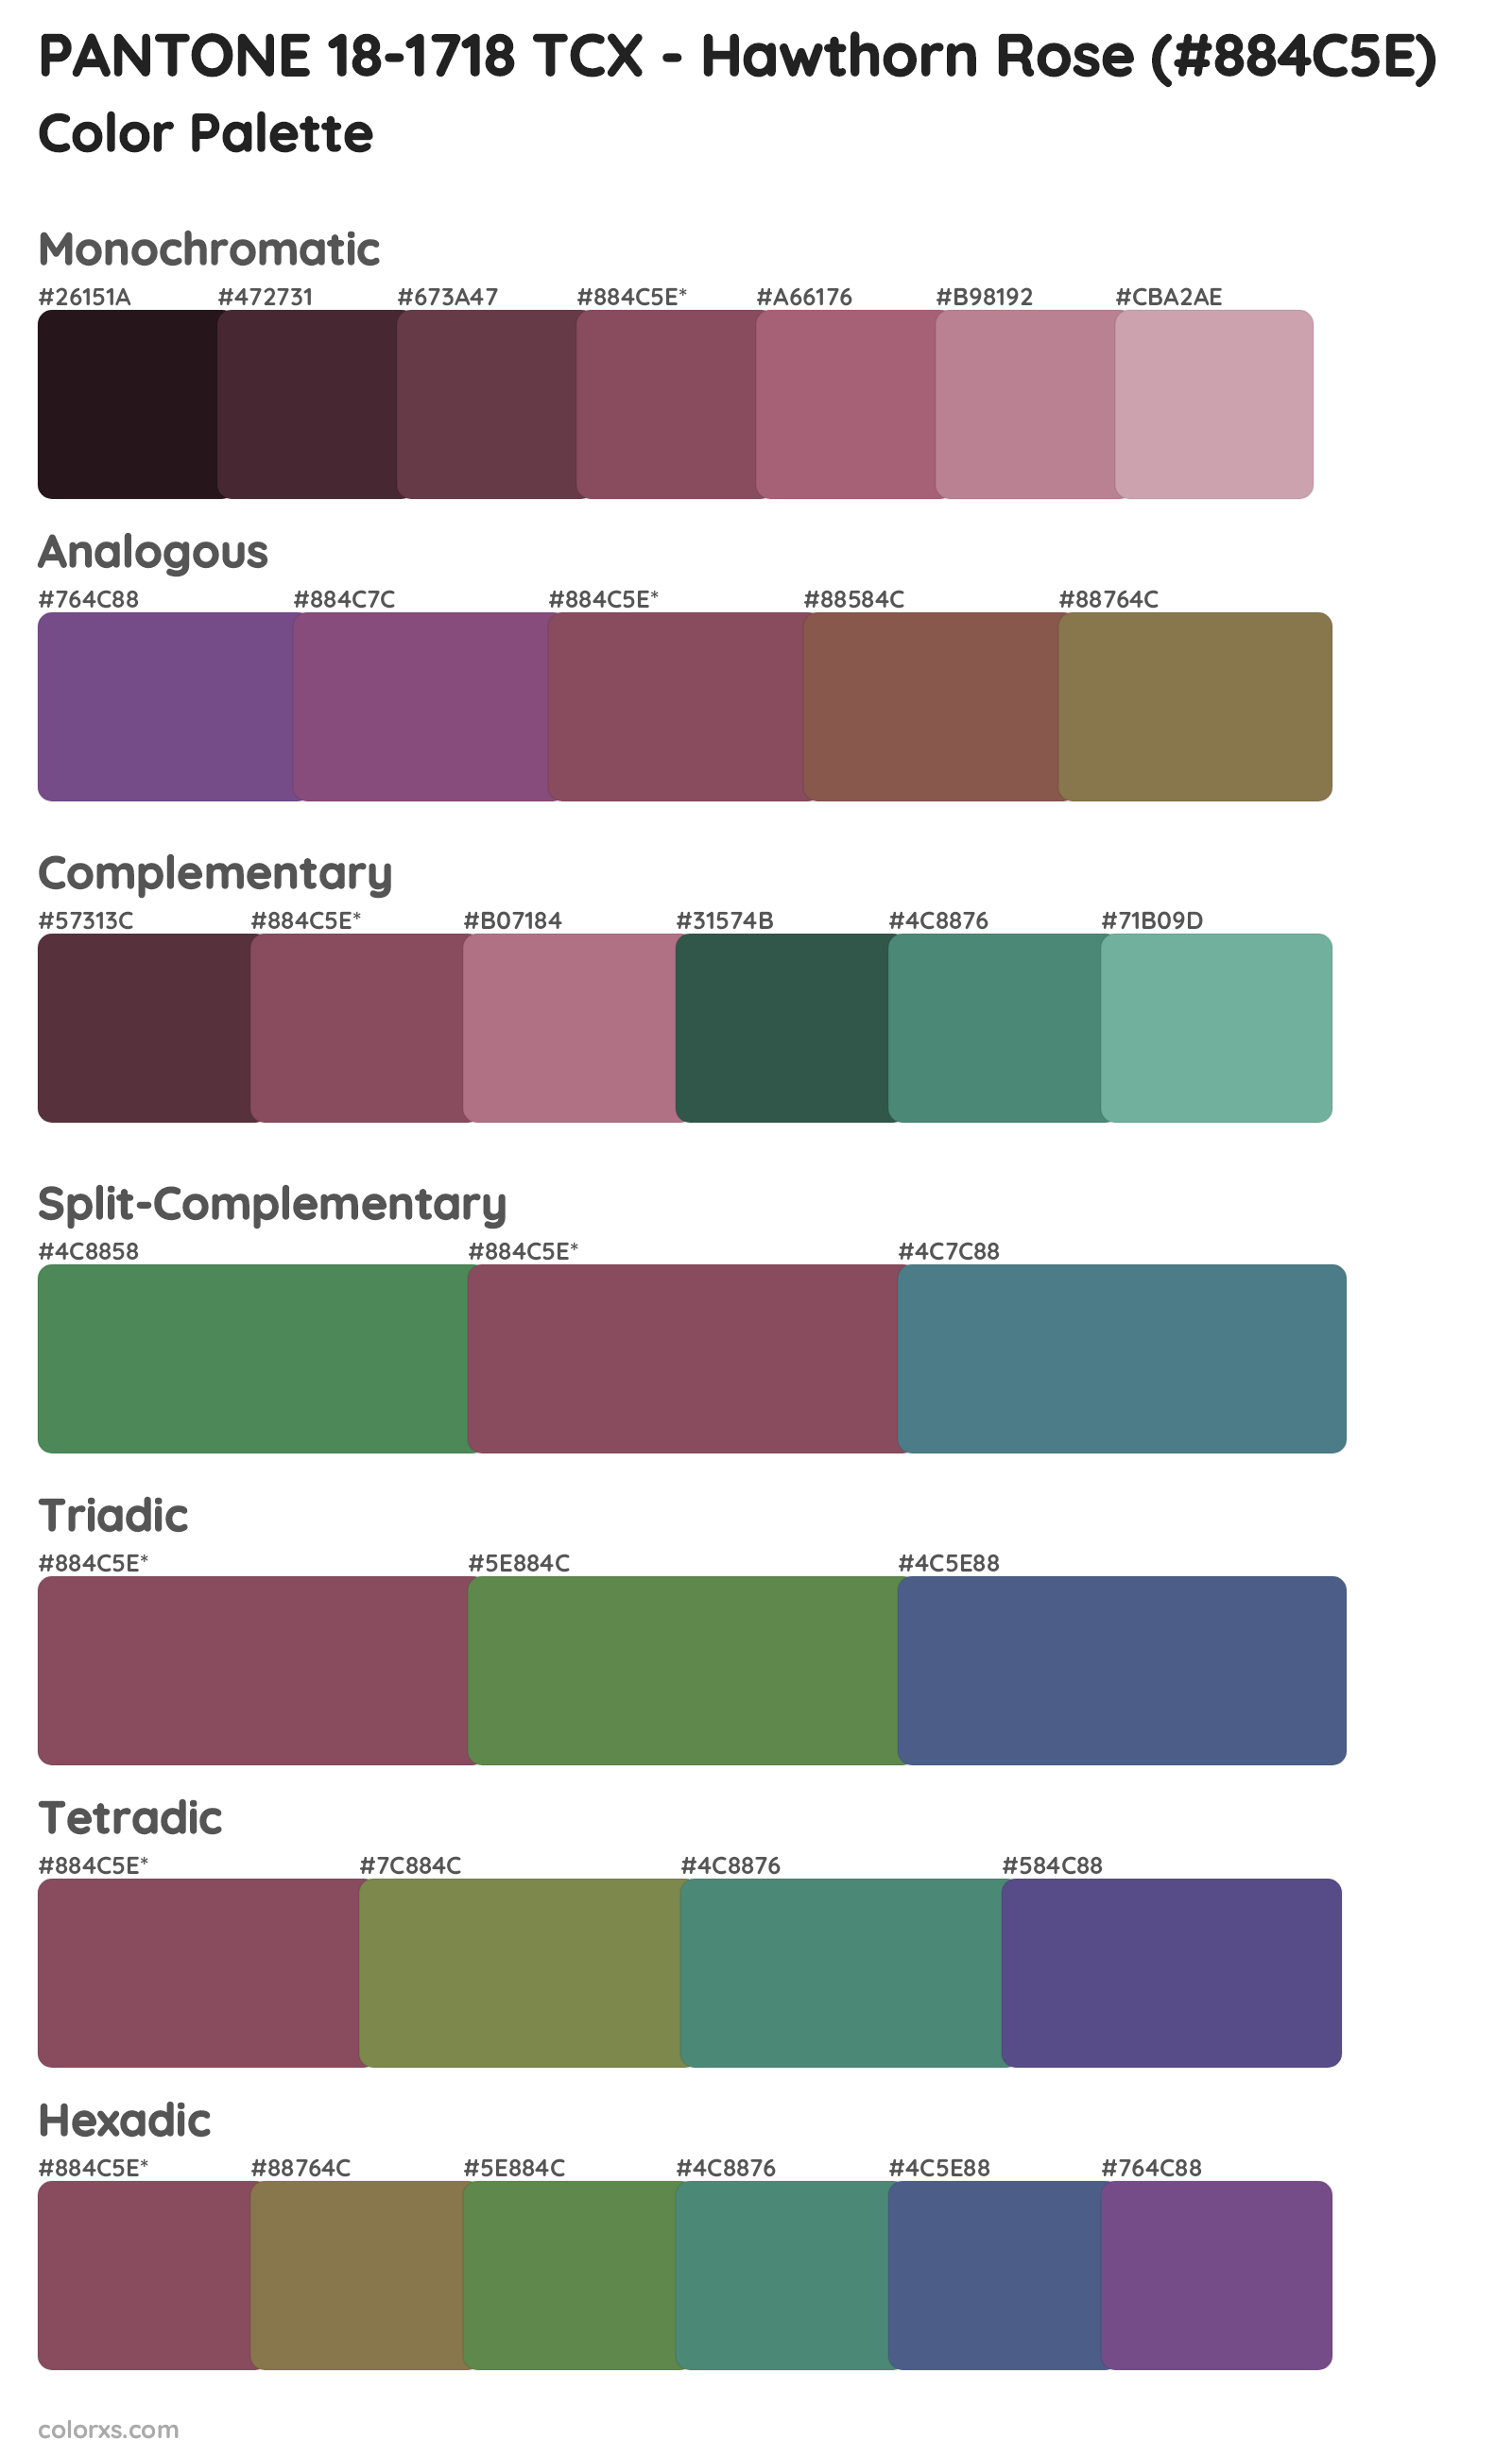 PANTONE 18-1718 TCX - Hawthorn Rose Color Scheme Palettes